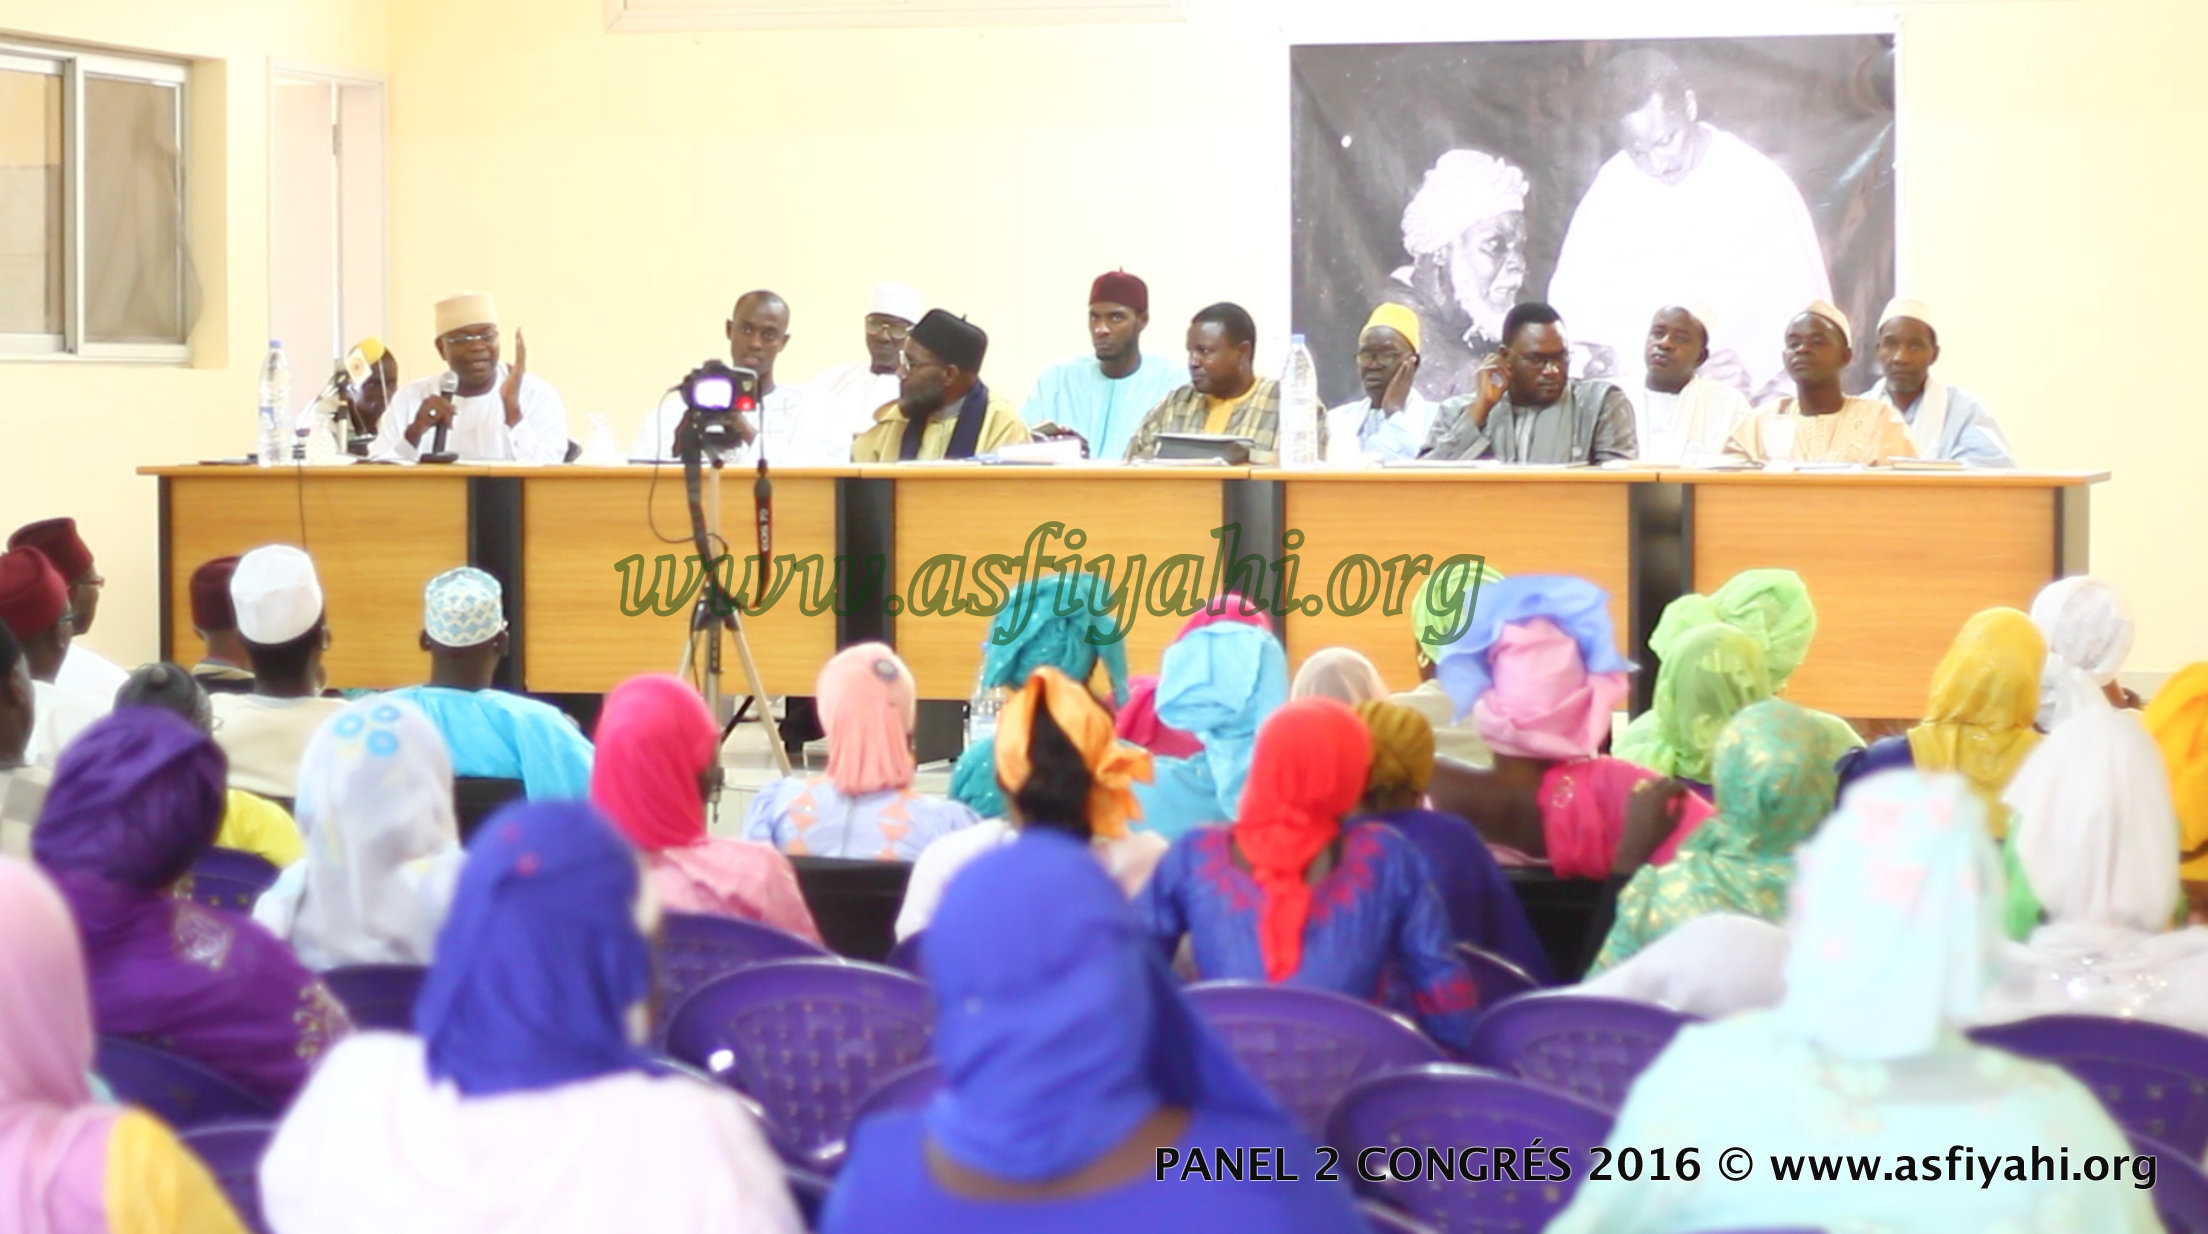 PHOTOS - 24 JUILLET 2016 À DAKAR - Les Images du second Panel de la 7éme edition du Congrès de la Jeunesse Tidjane Malikite